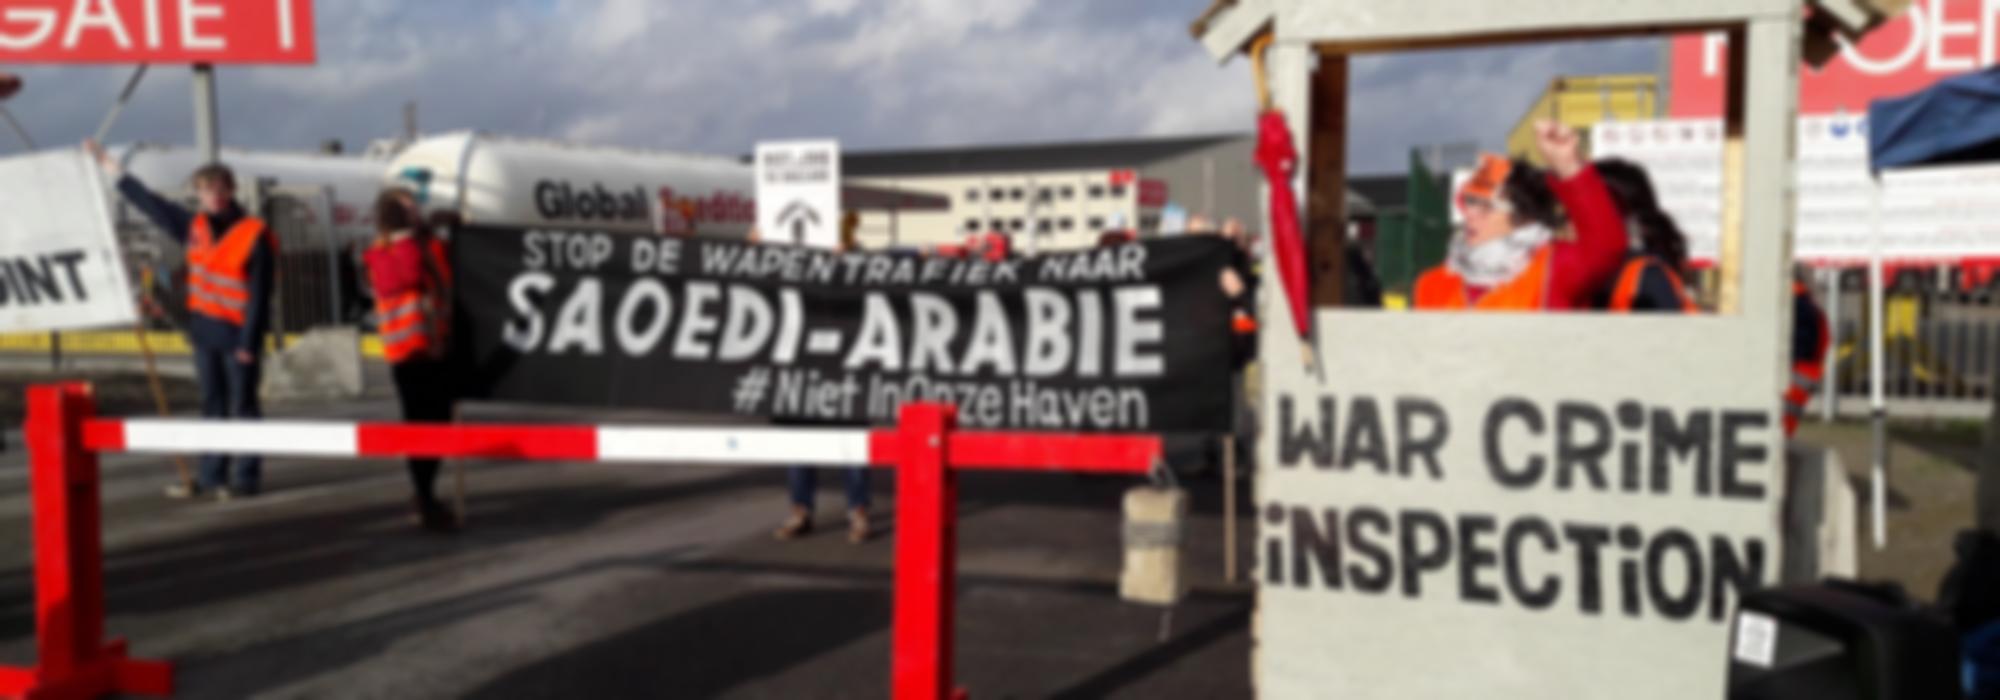 protestfoto bij de haven van Antwerpen (katoennatie) met grote  zwarte banner waarop witte letters staan die zeggen: "Stop de wapentrafiek naar Saoedi-Arabië" naast de banner staat een douanehuisje met slagboom, waarop staat "War Crime inspection" in het huisje staat een vrouw met een opgeheven vuist